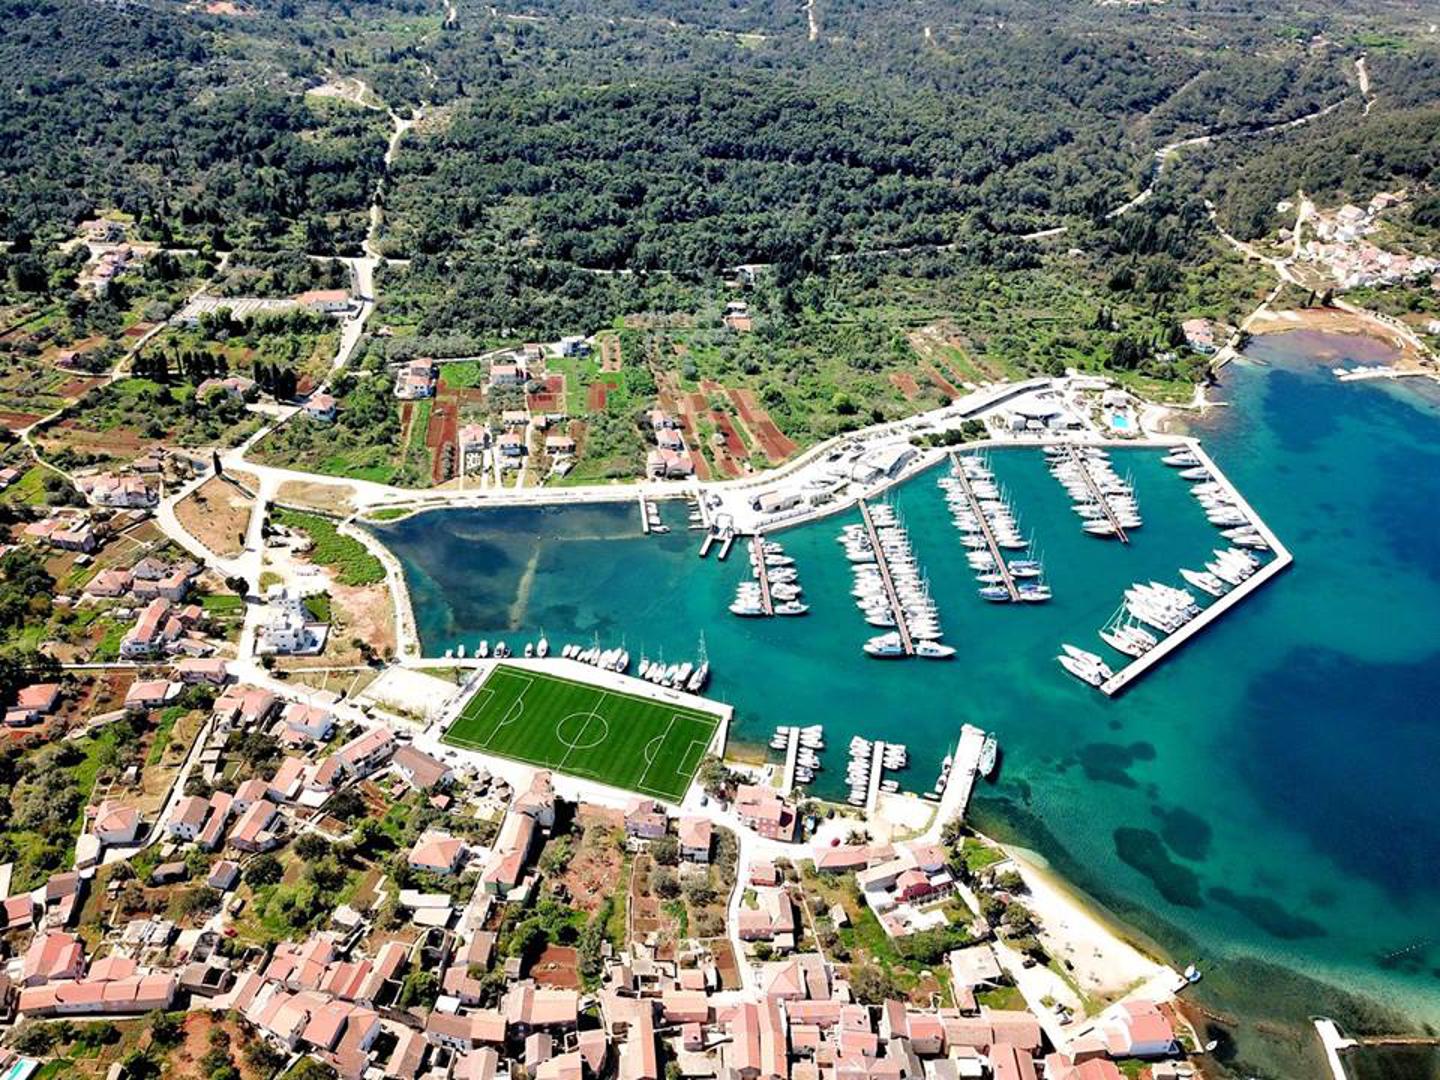 Nogometni klub Sveti Mihovil iz Sutomišćice na otoku Ugljanu u ponedjeljak će otvoriti svoje novo igralište. Još nisu skupili novac za stadion, ali igralište je vrhunsko